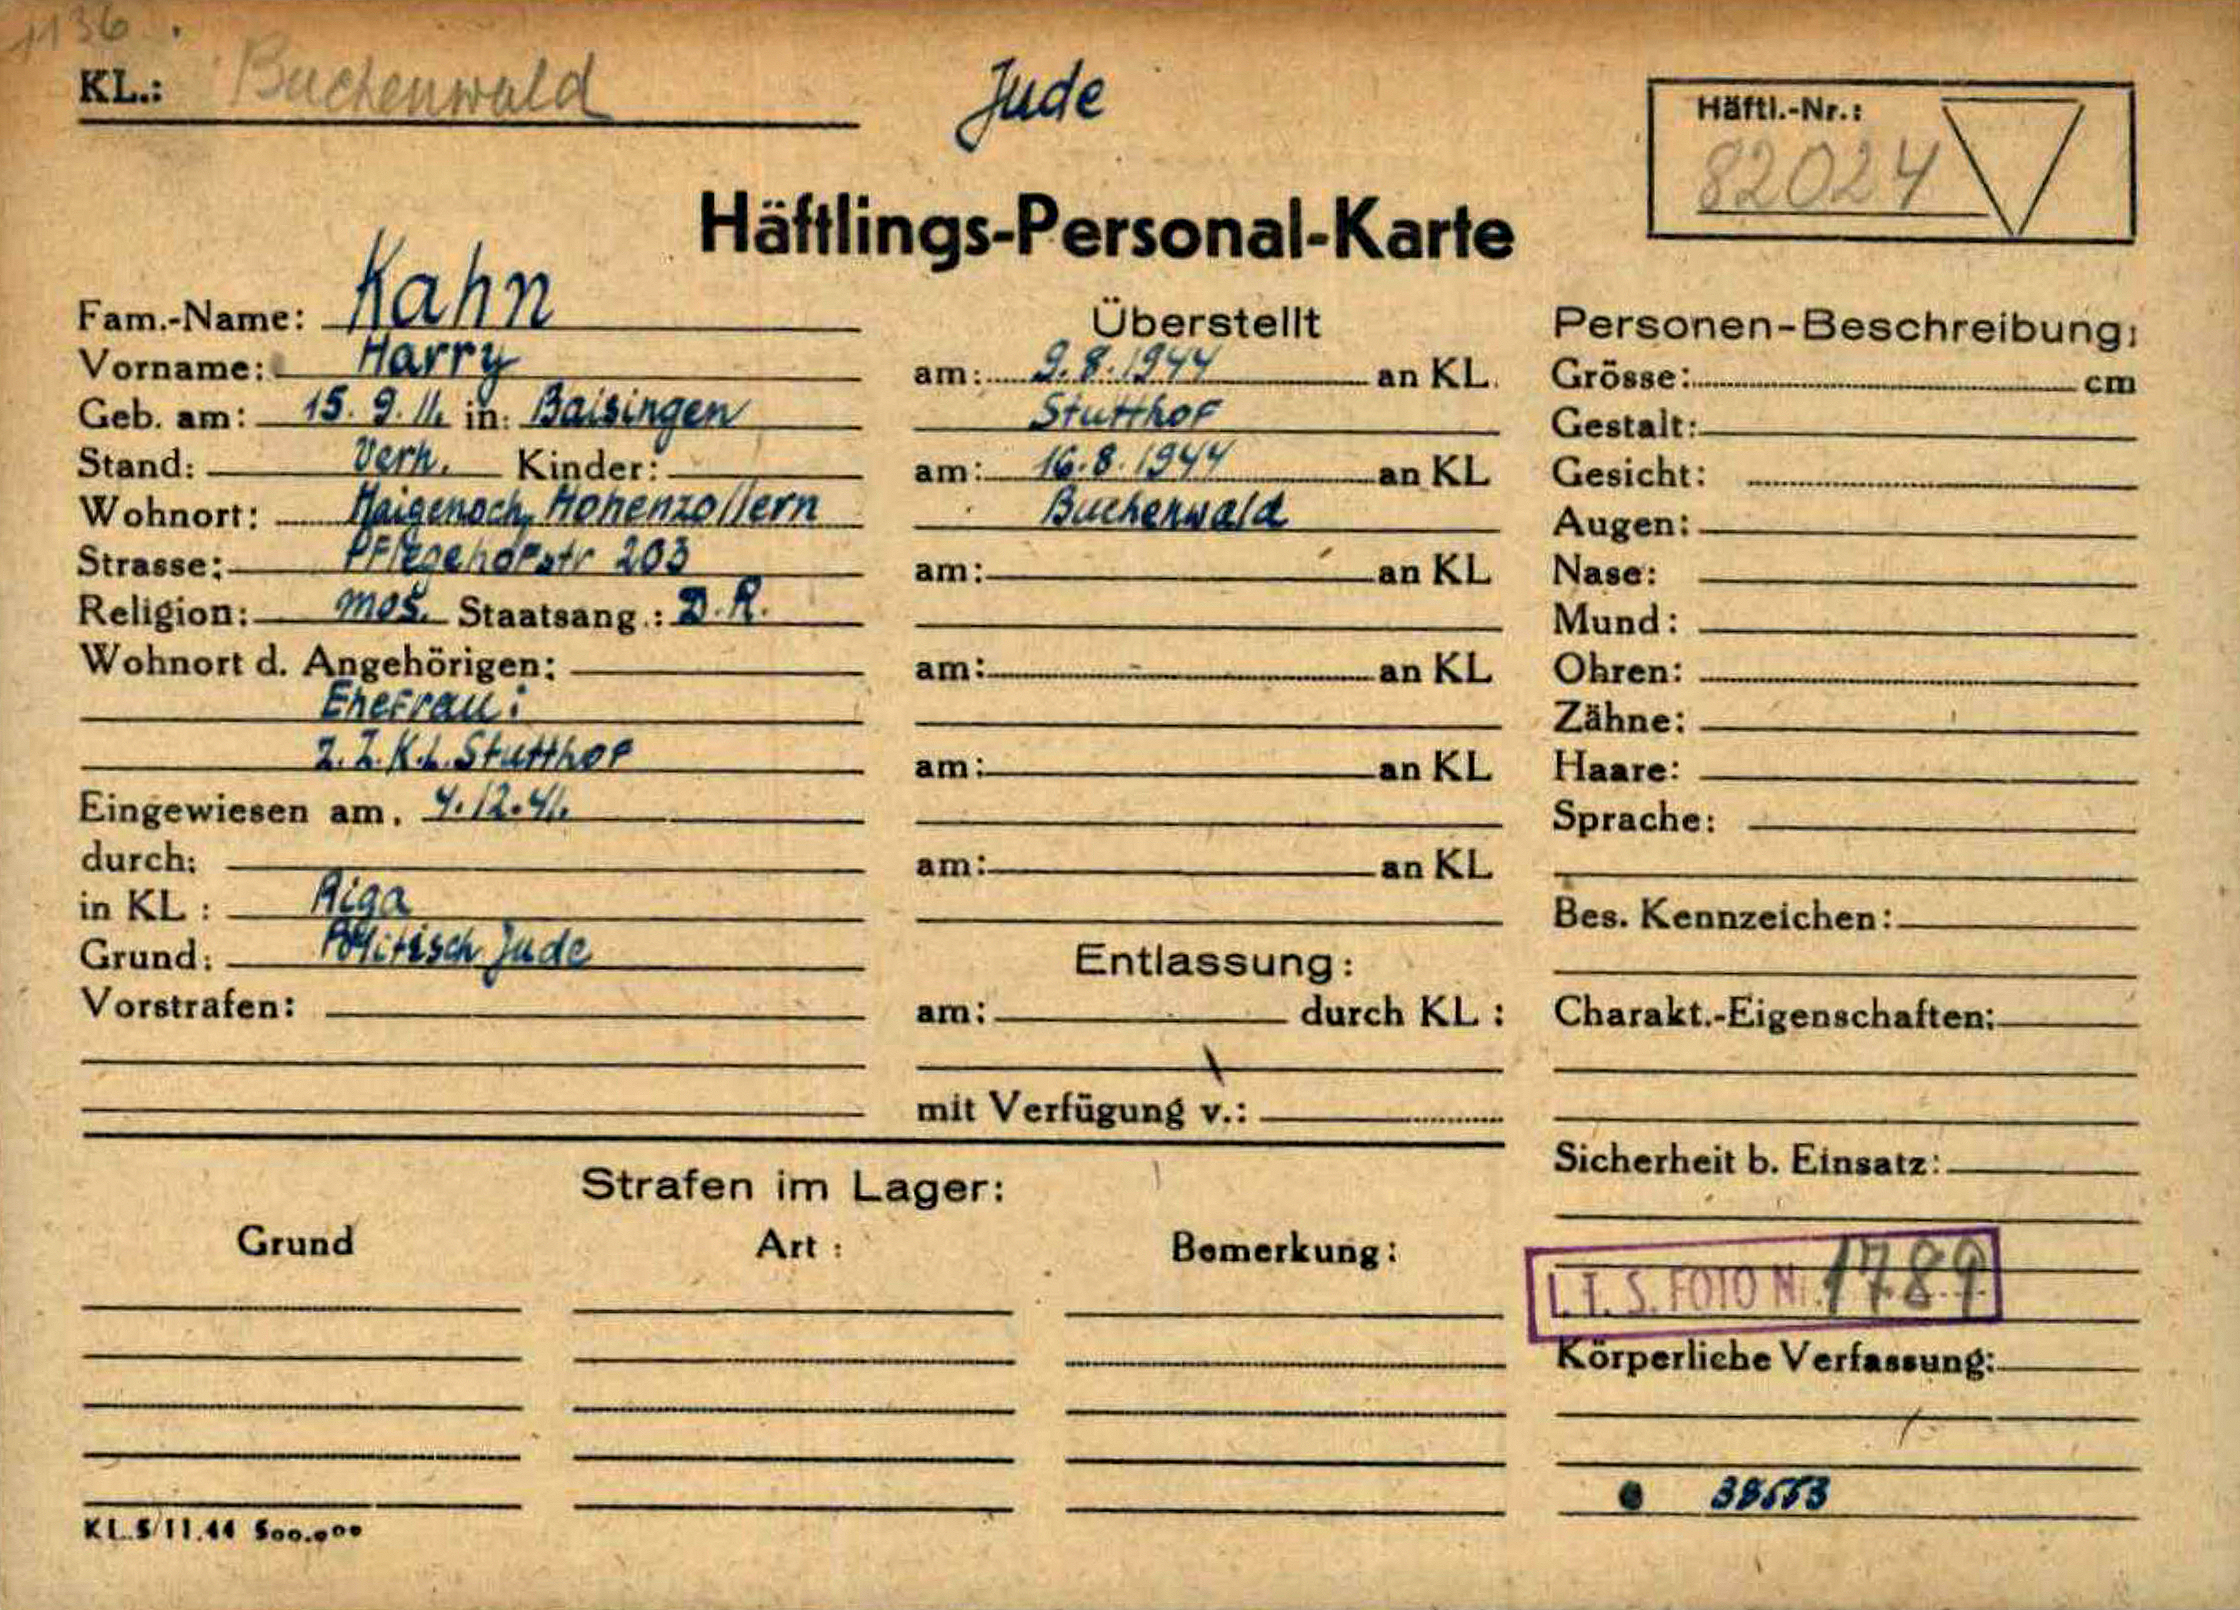 Karteikarte für Harry Kahn im KZ Buchenwald